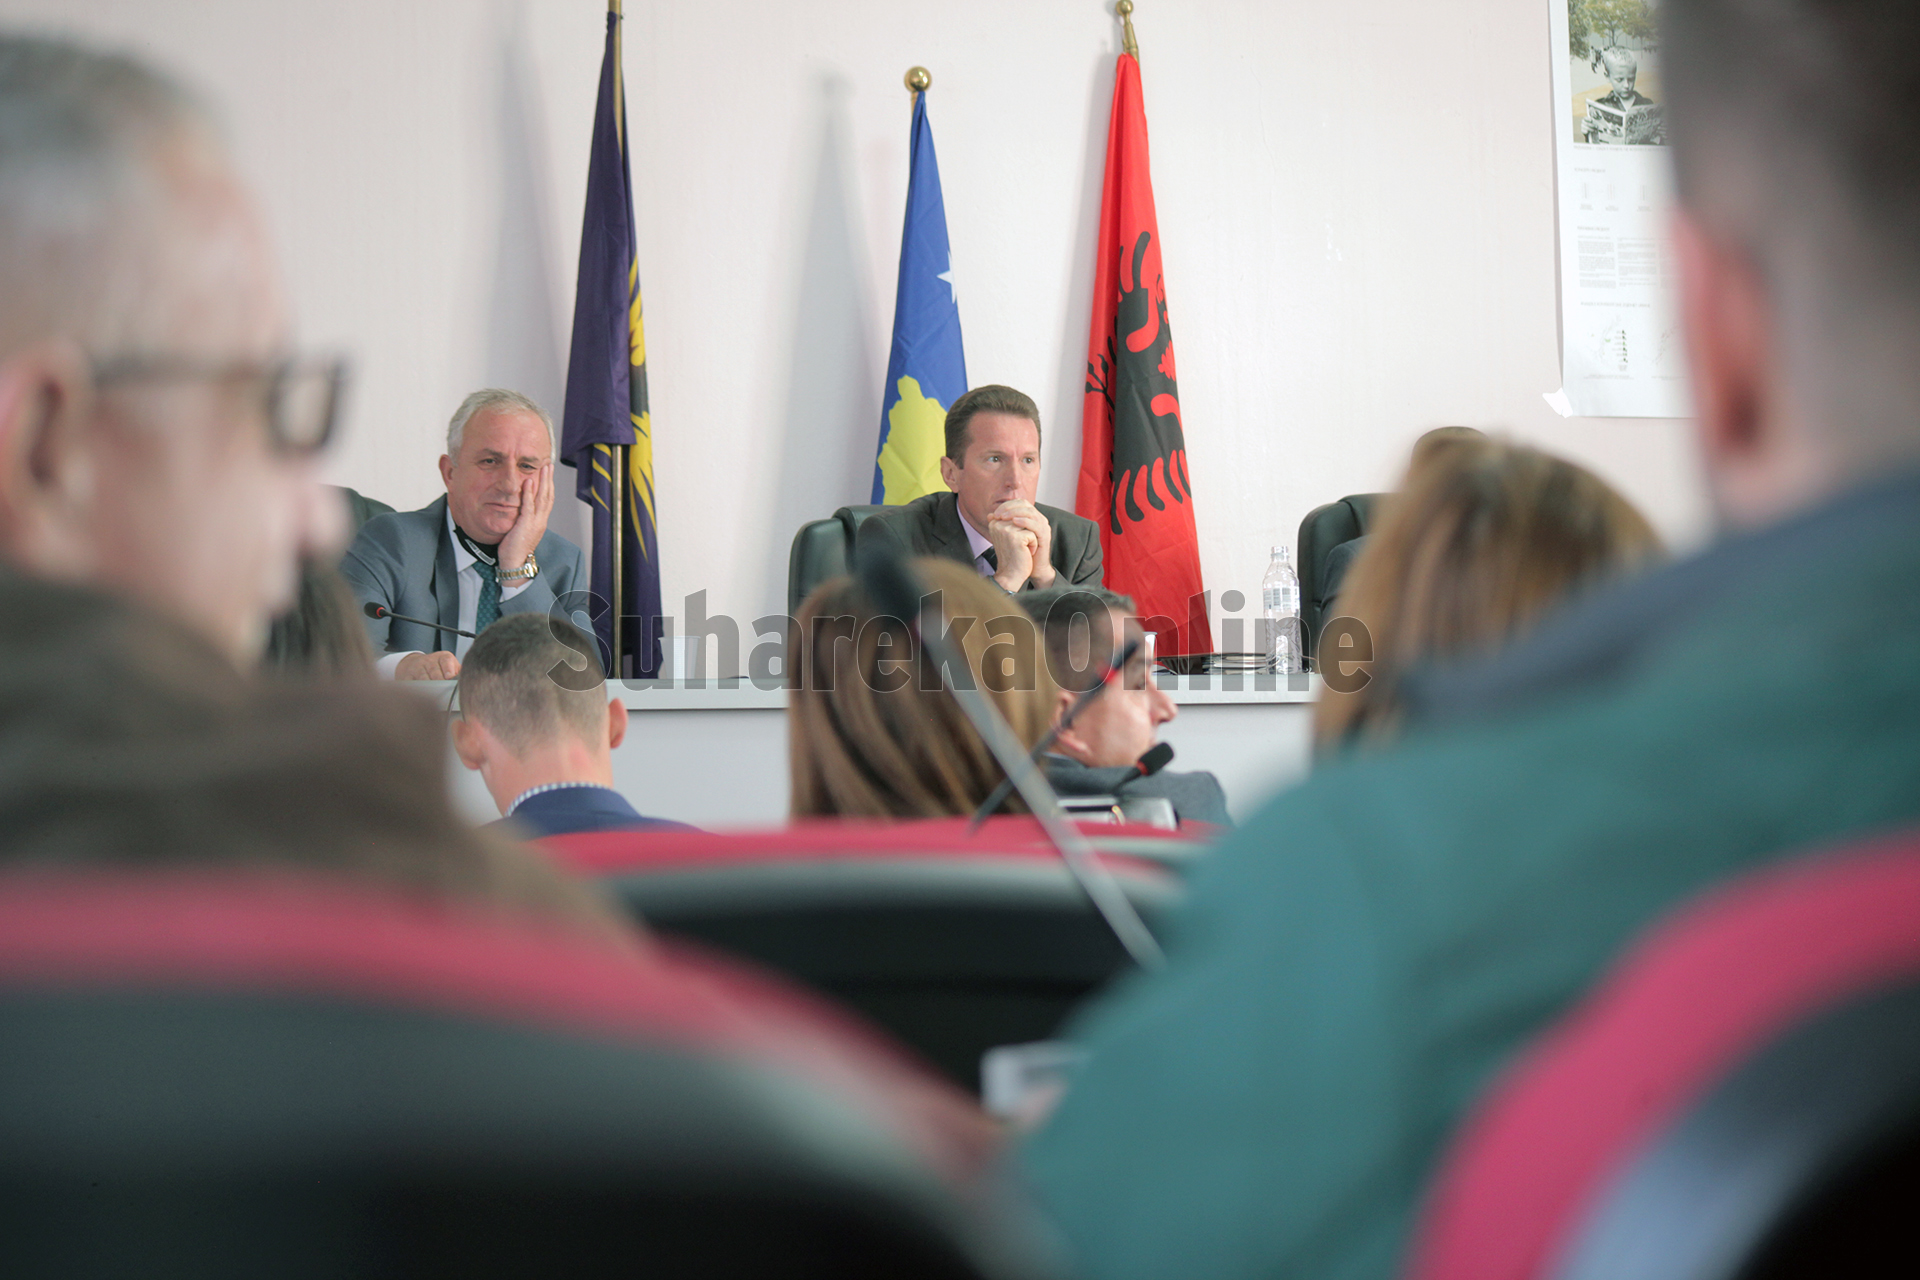 Falja e 100 eurove për taksapaguesit, kërkesa e LVV-Suharekë nuk futet në rend dite në Asamblenë Komunale